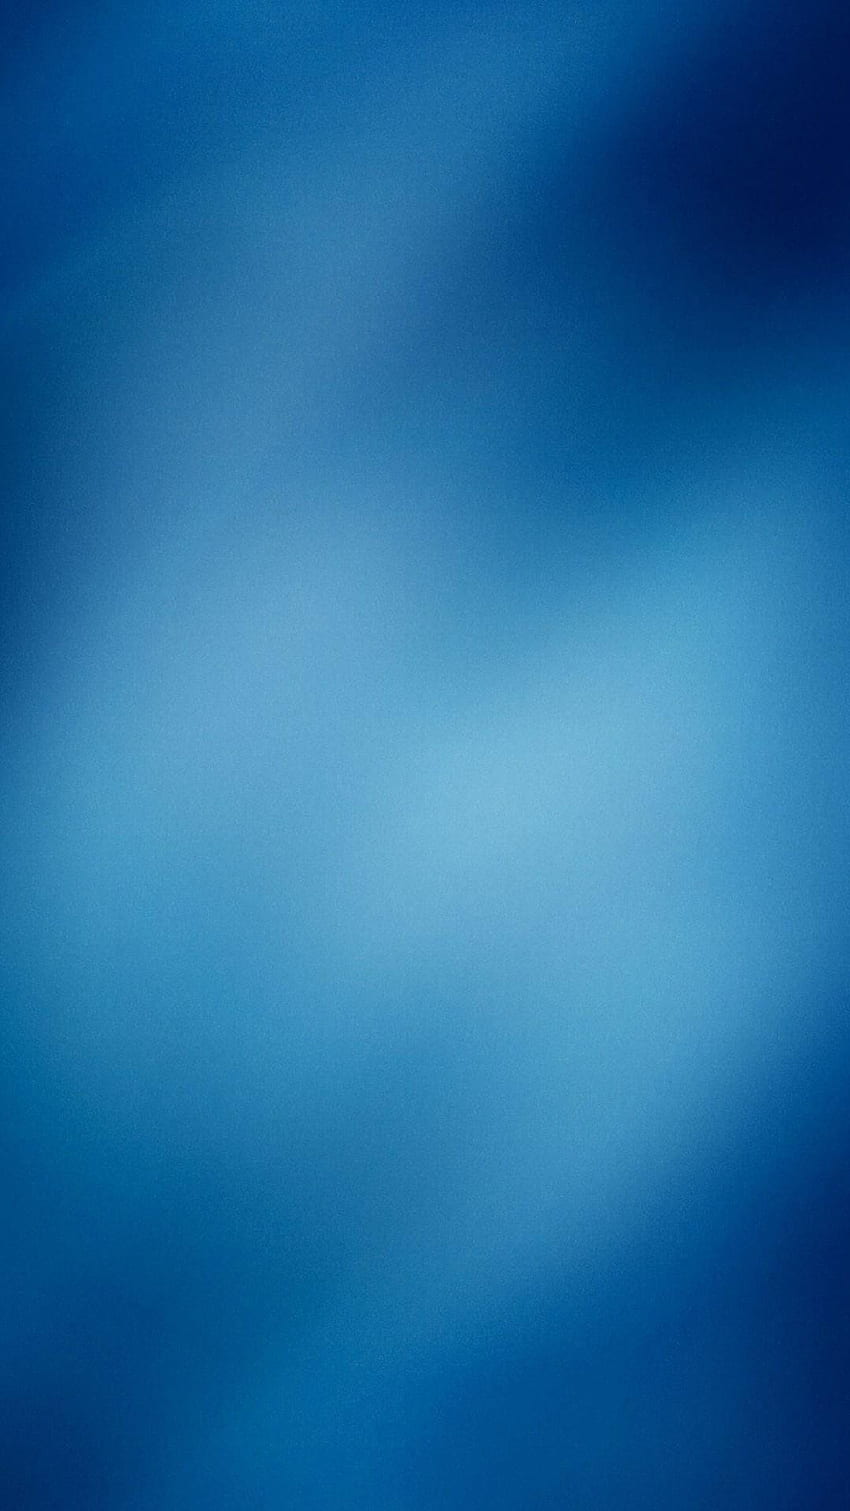 Biru Tua Memudar Menjadi Biru Muda, Pudar wallpaper ponsel HD